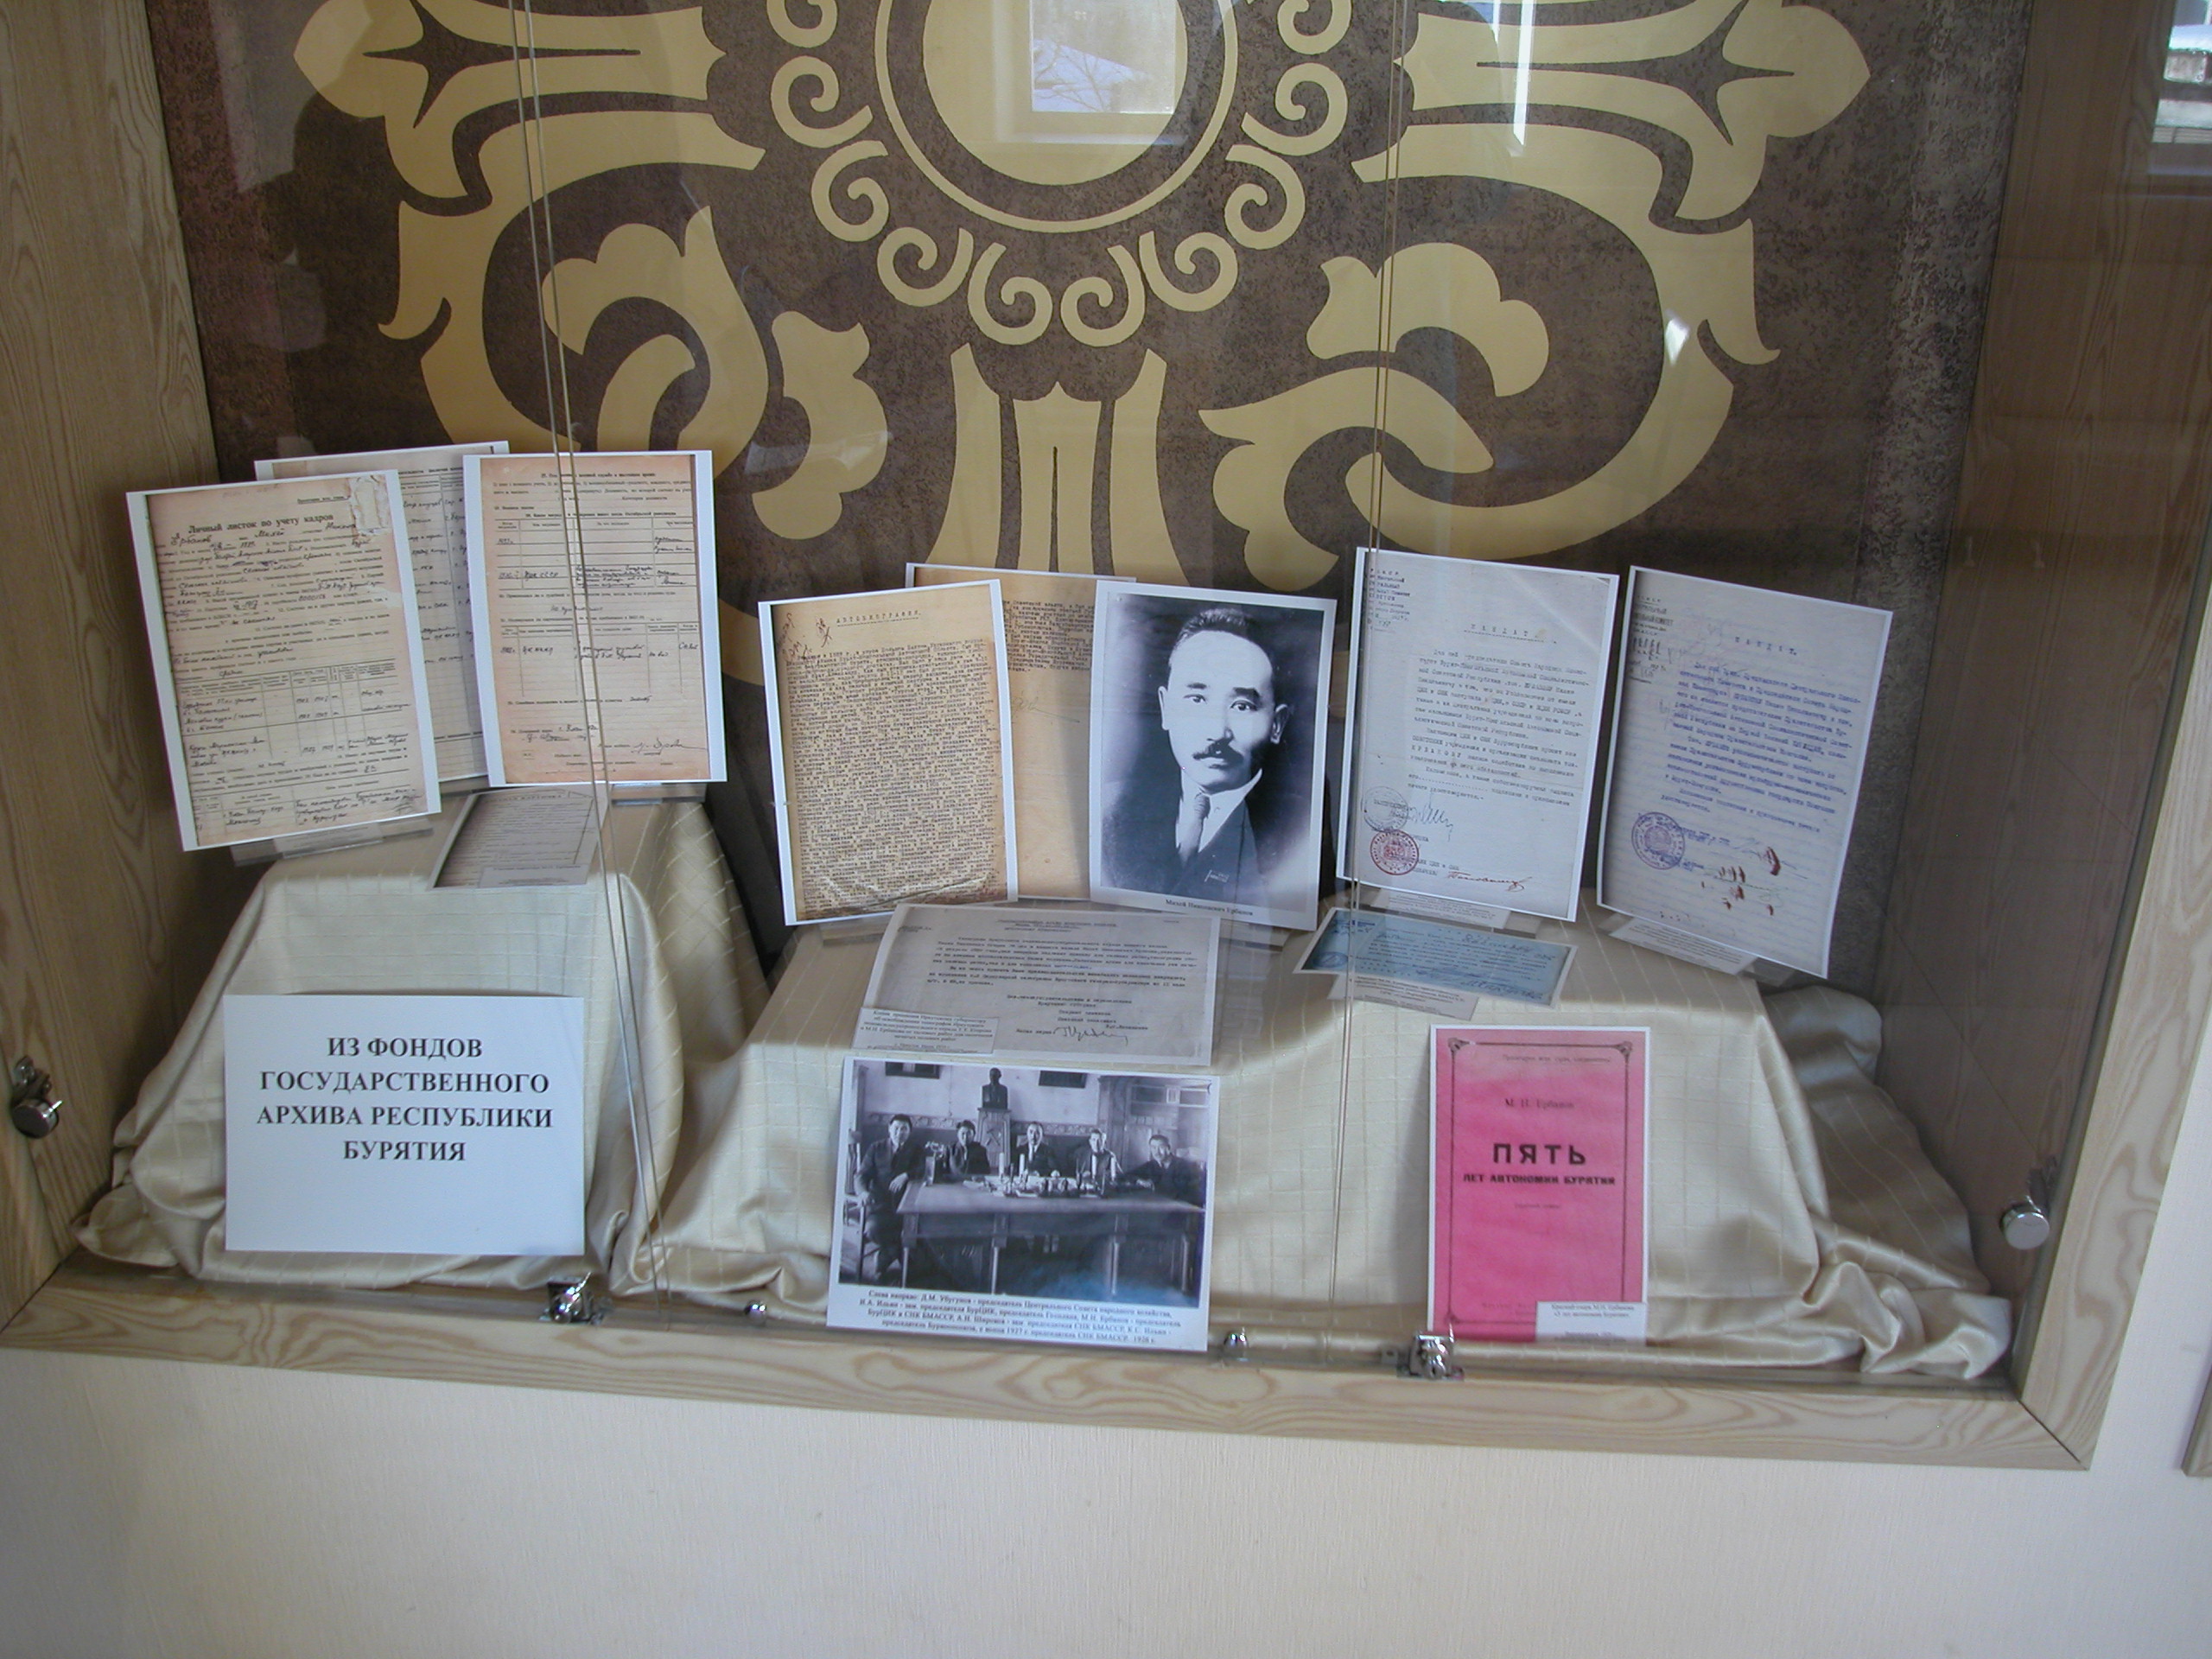 24 декабря 2014 г. Государственный архив РБ принял участие в торжественном собрании общественности, посвященном 125-летию со дня рождения М.Н. Ербанова